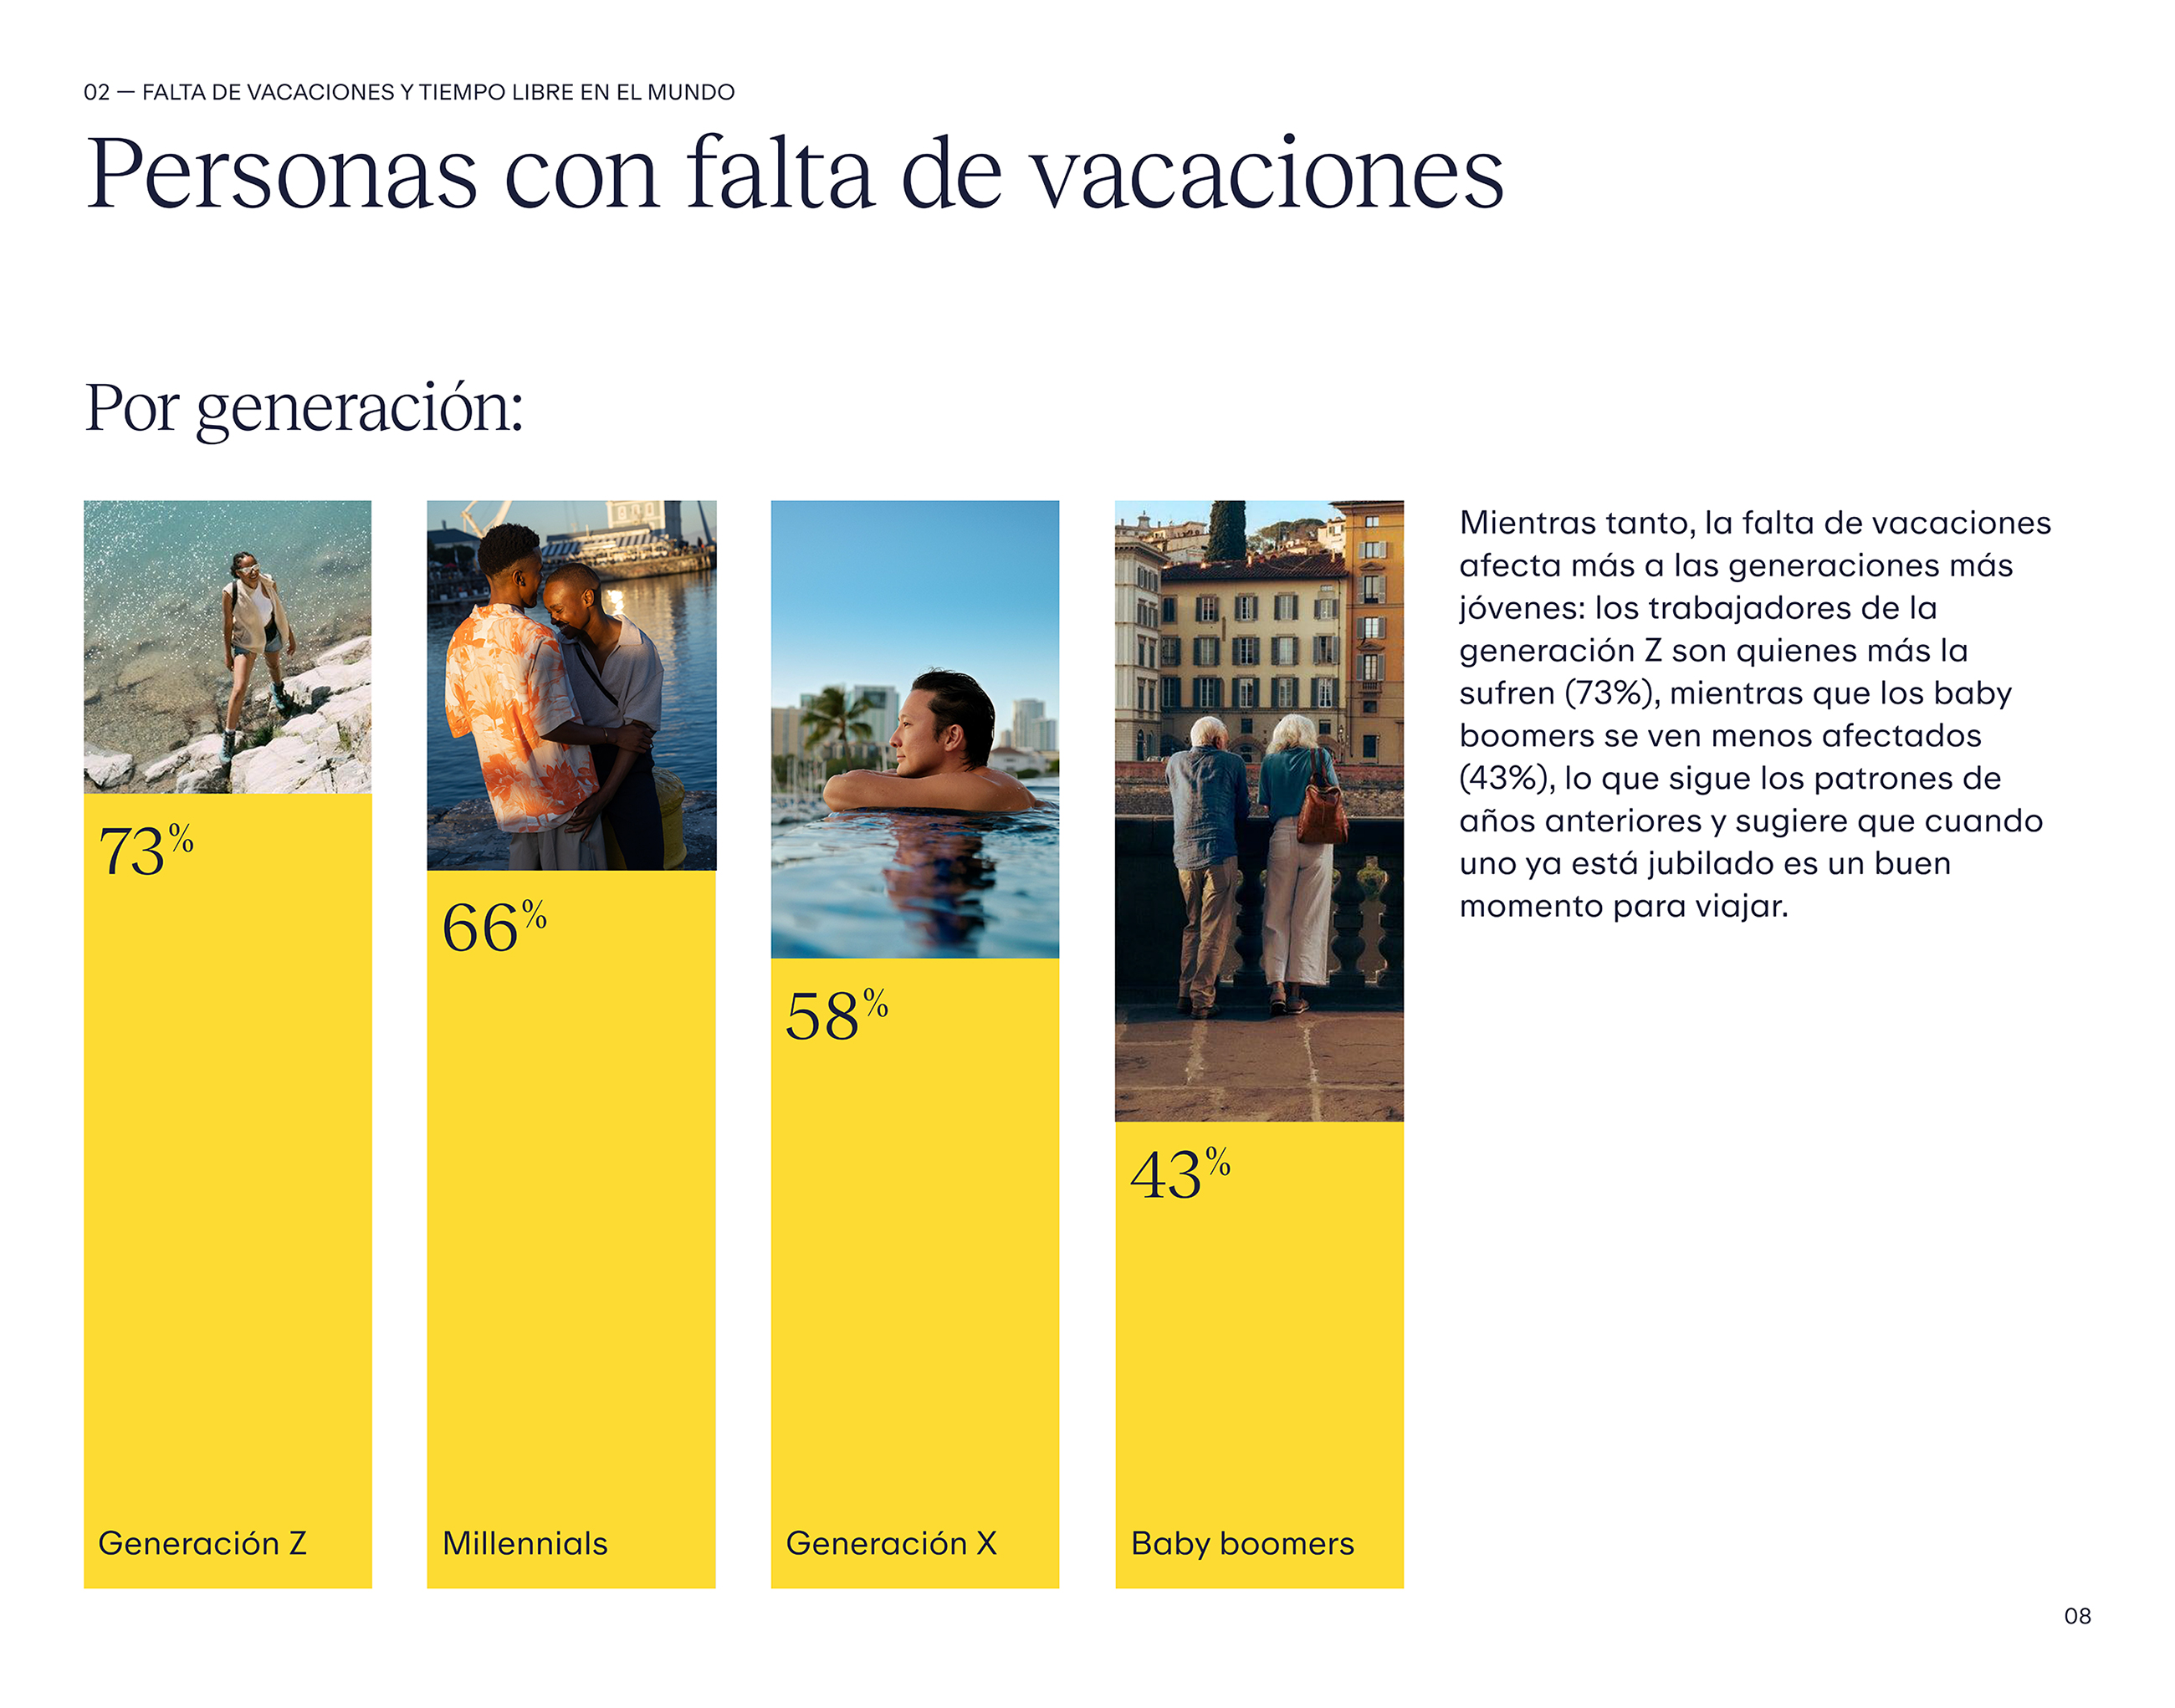 Las generaciones más jóvenes sufren más de la falta de vacaciones